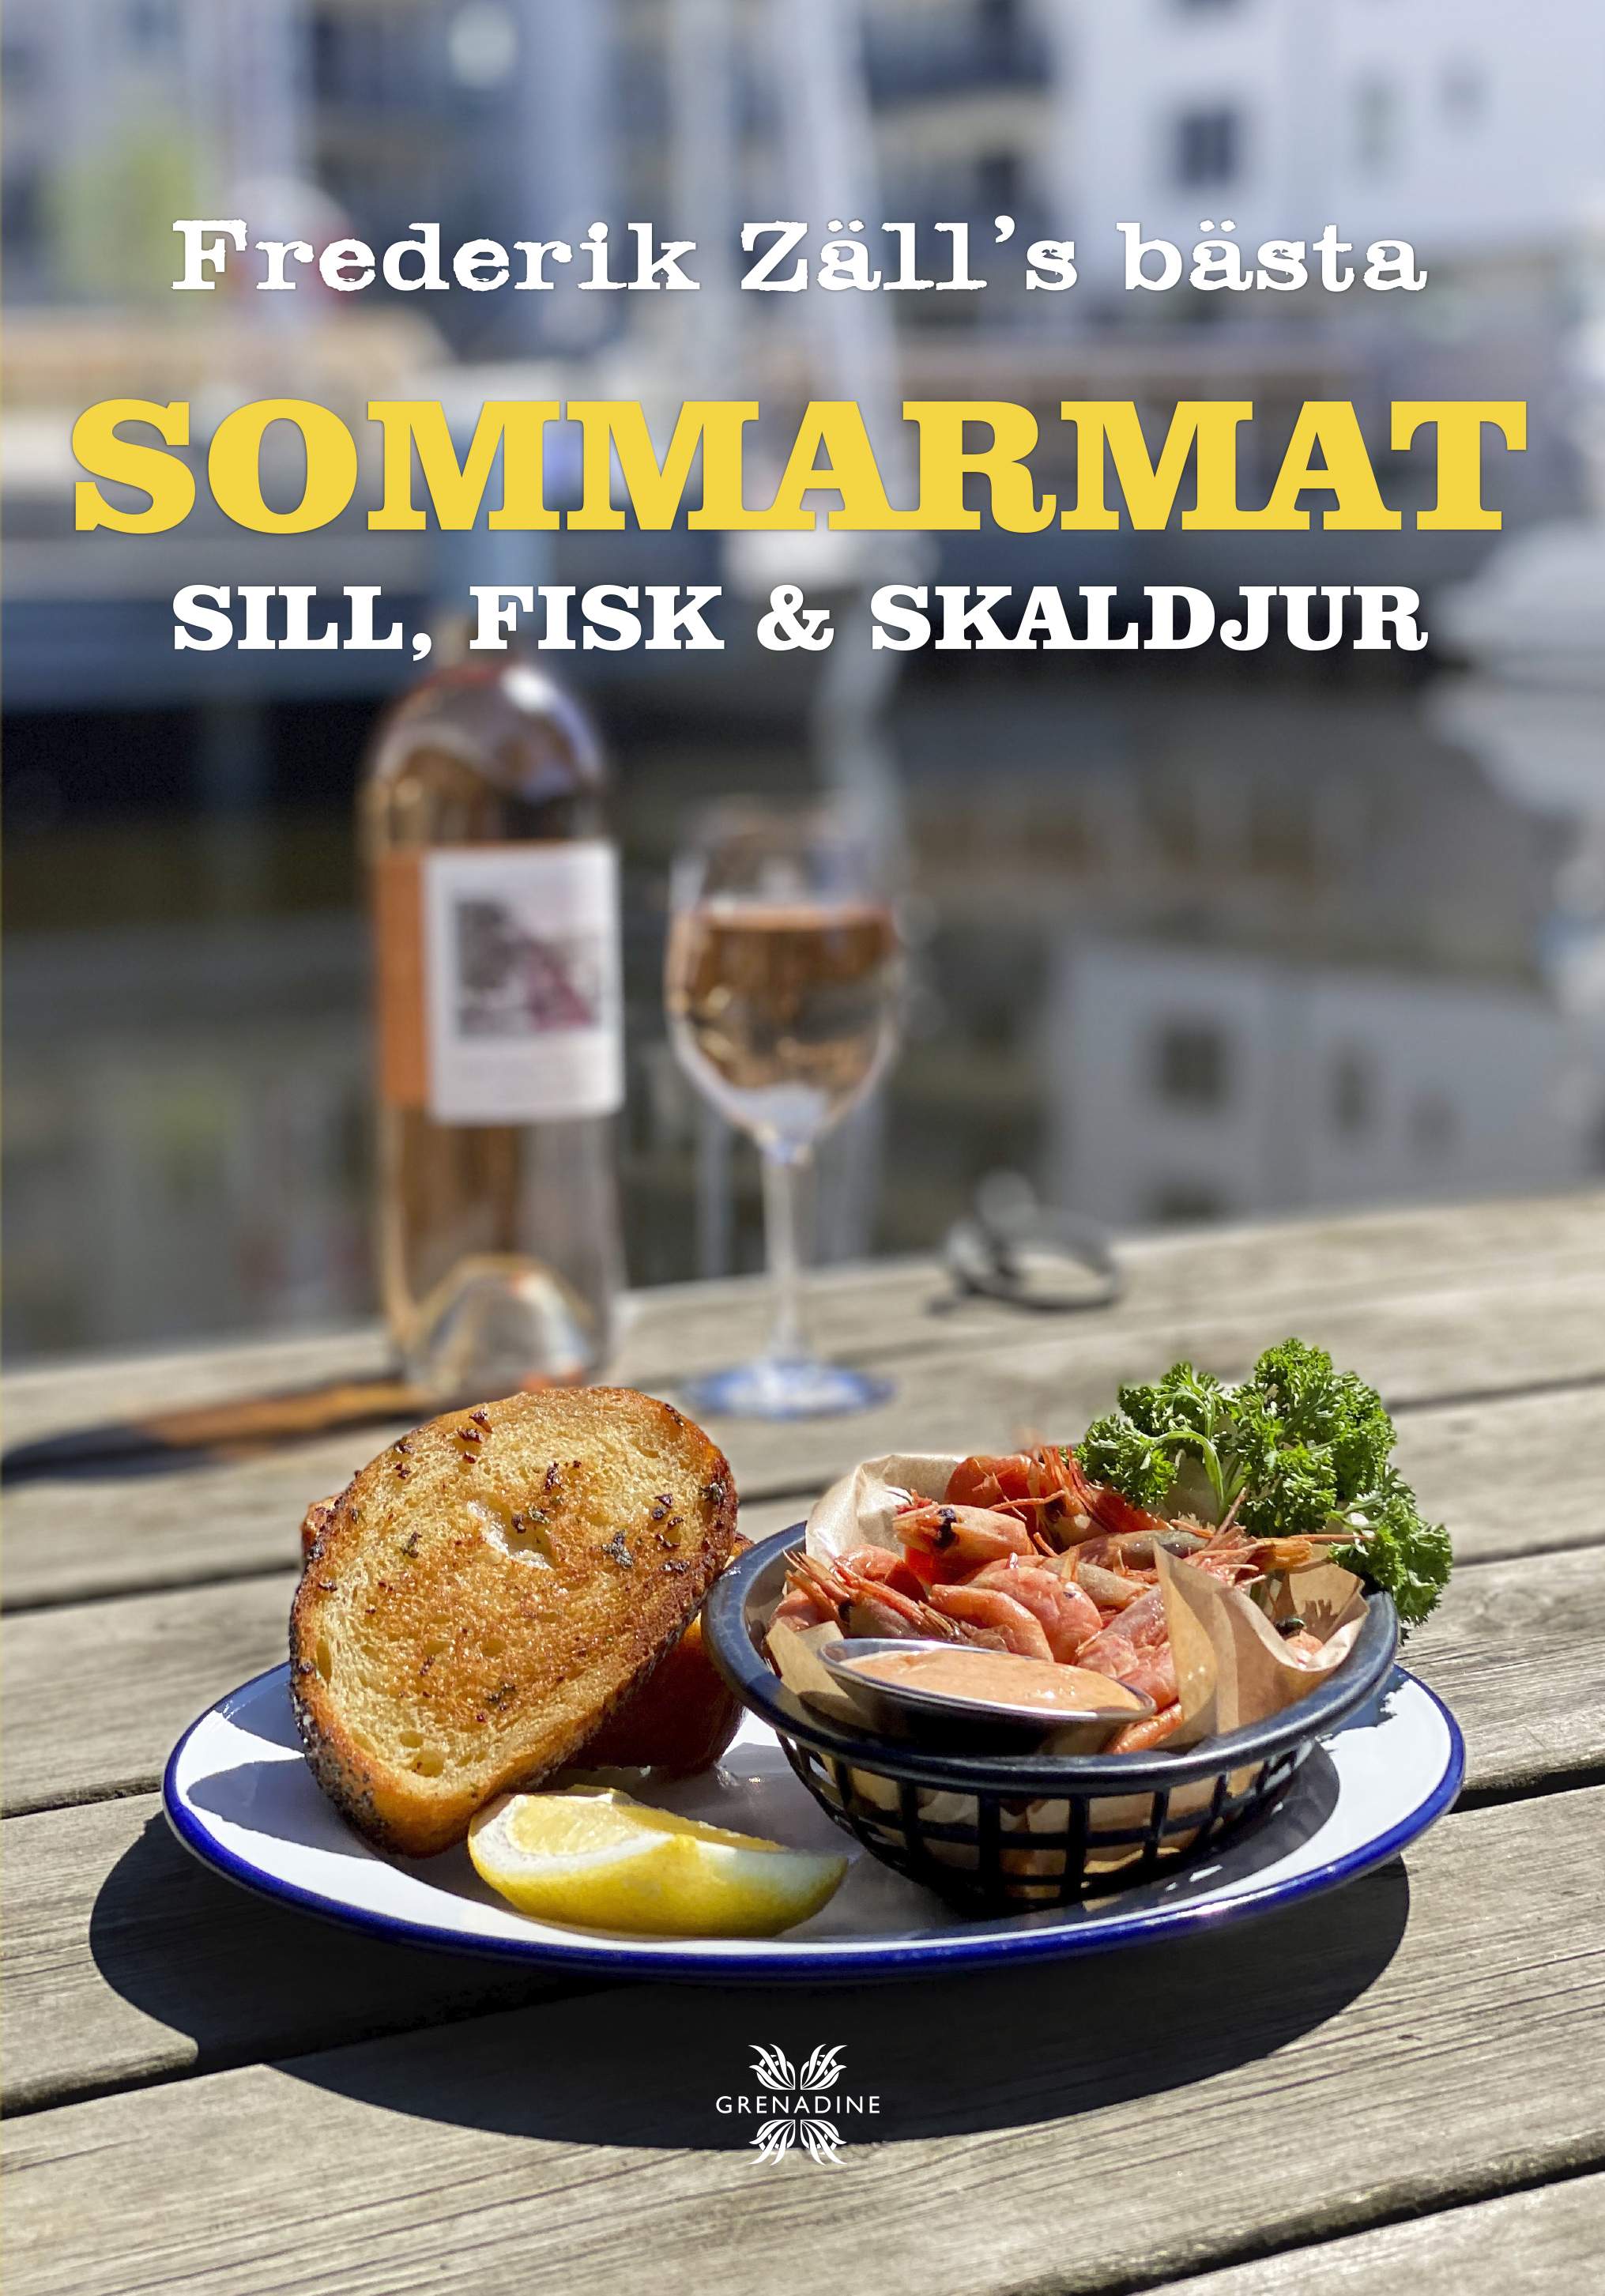 Sommarmat: Sill, fisk & skaldjur – Frederik Zäll´s bästa av Frederik Zäll Grenadine Bokförlag.